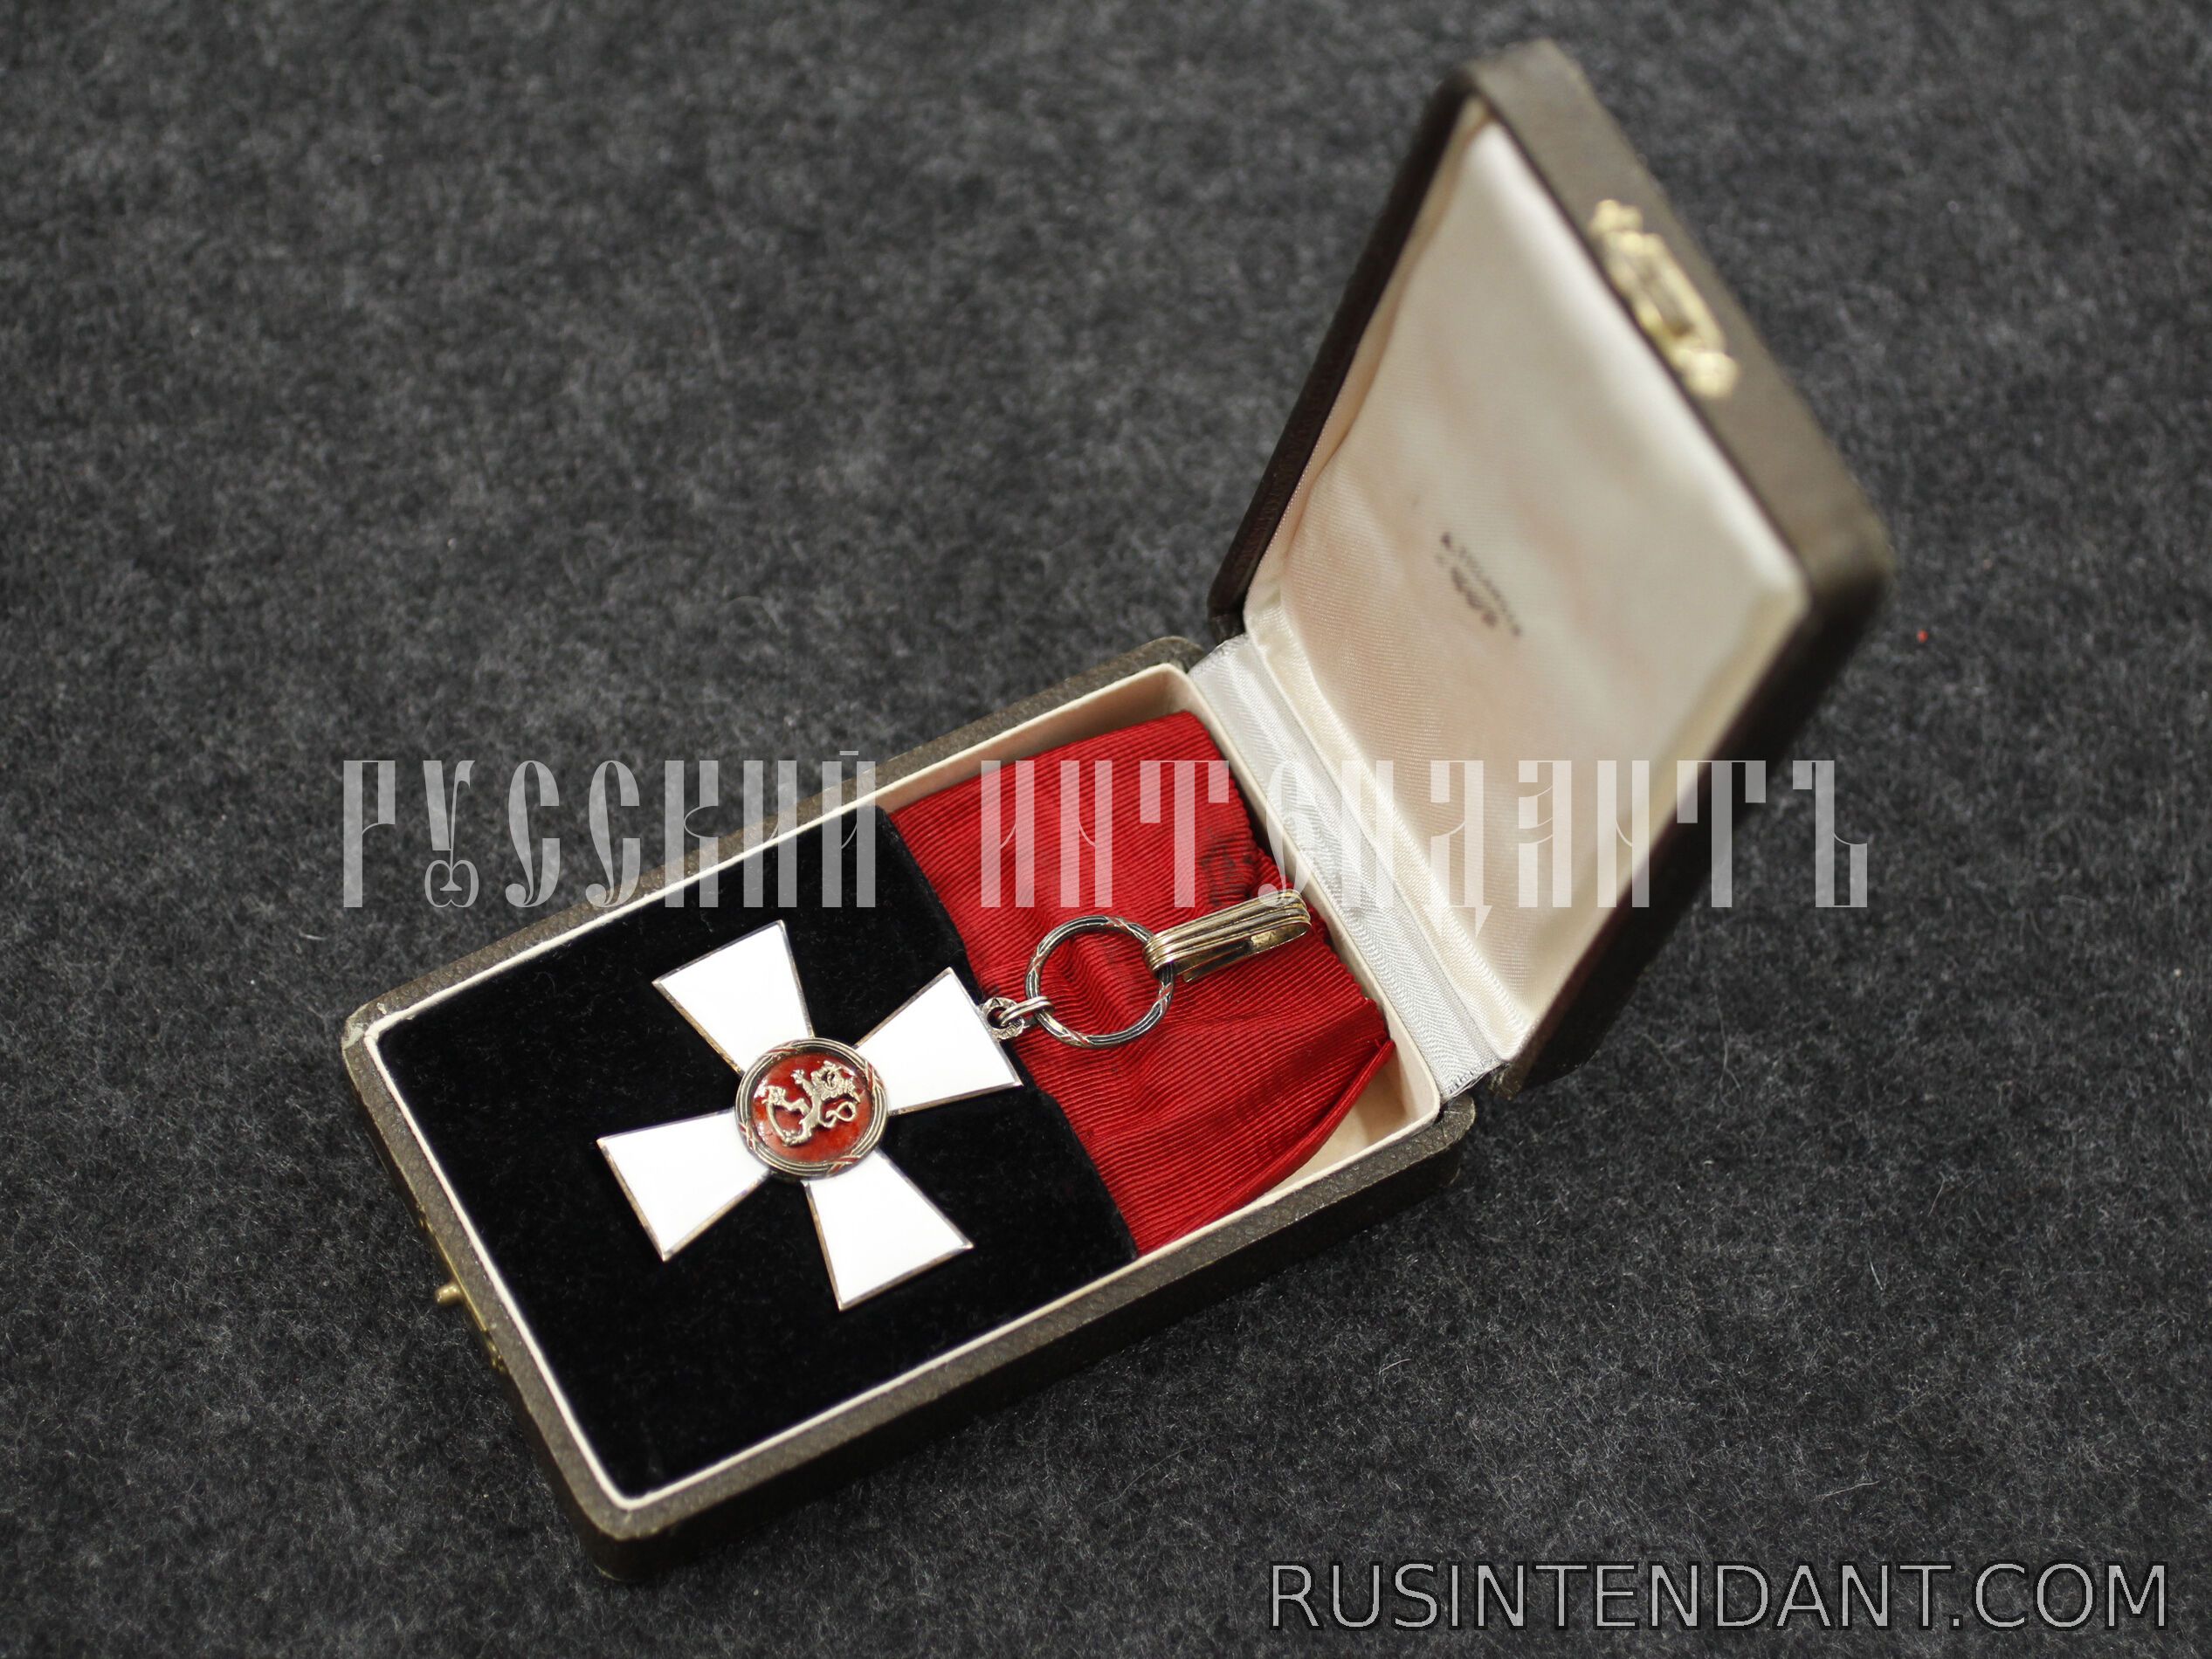 Фото 2: Командорский крест Ордена Льва Финляндии 